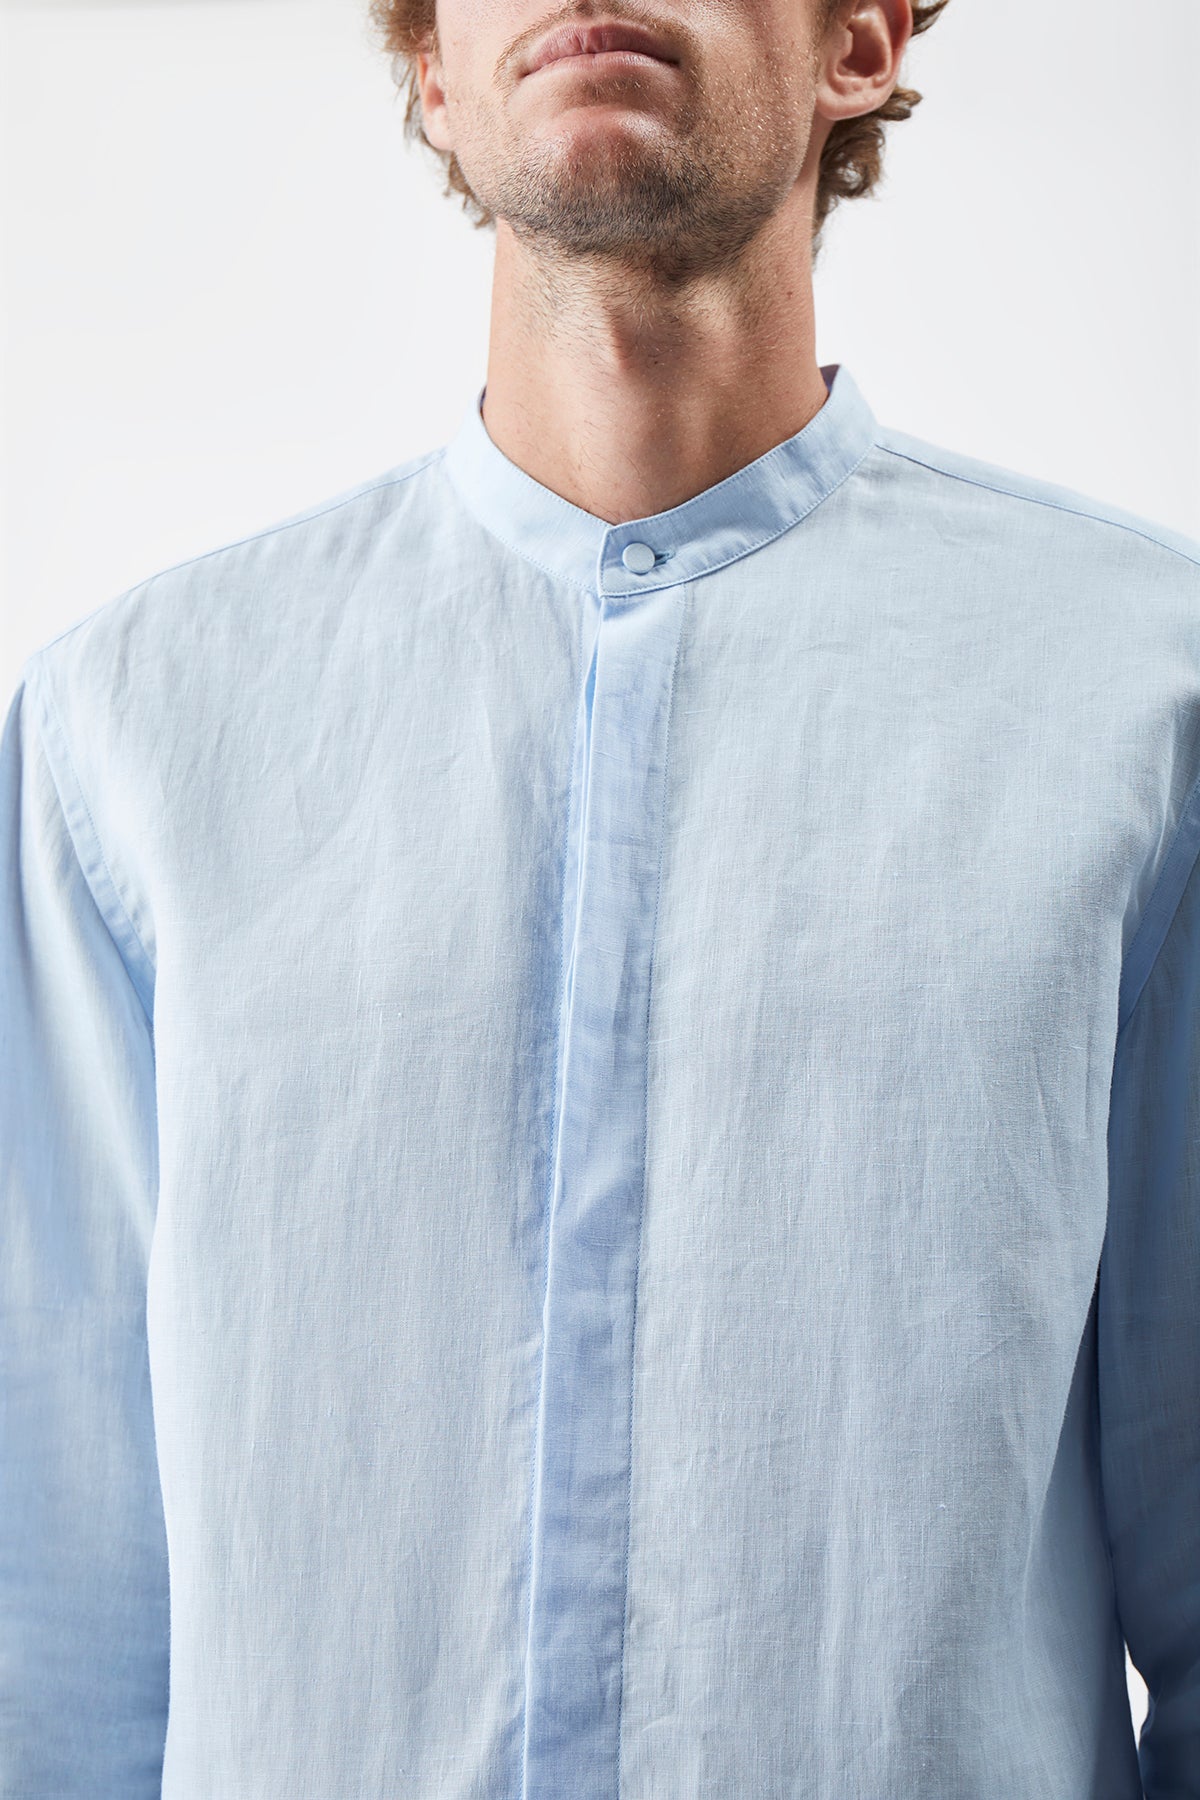 Ollie Shirt in Light Blue Linen